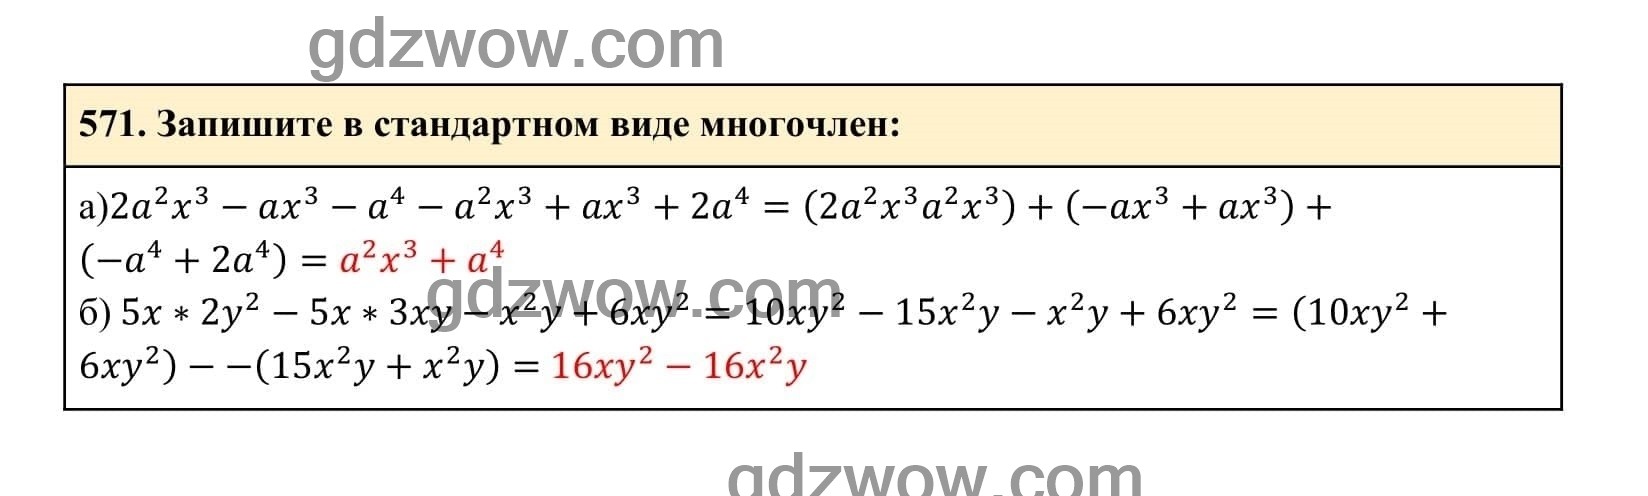 Упражнение 571 - ГДЗ по Алгебре 7 класс Учебник Макарычев (решебник) - GDZwow